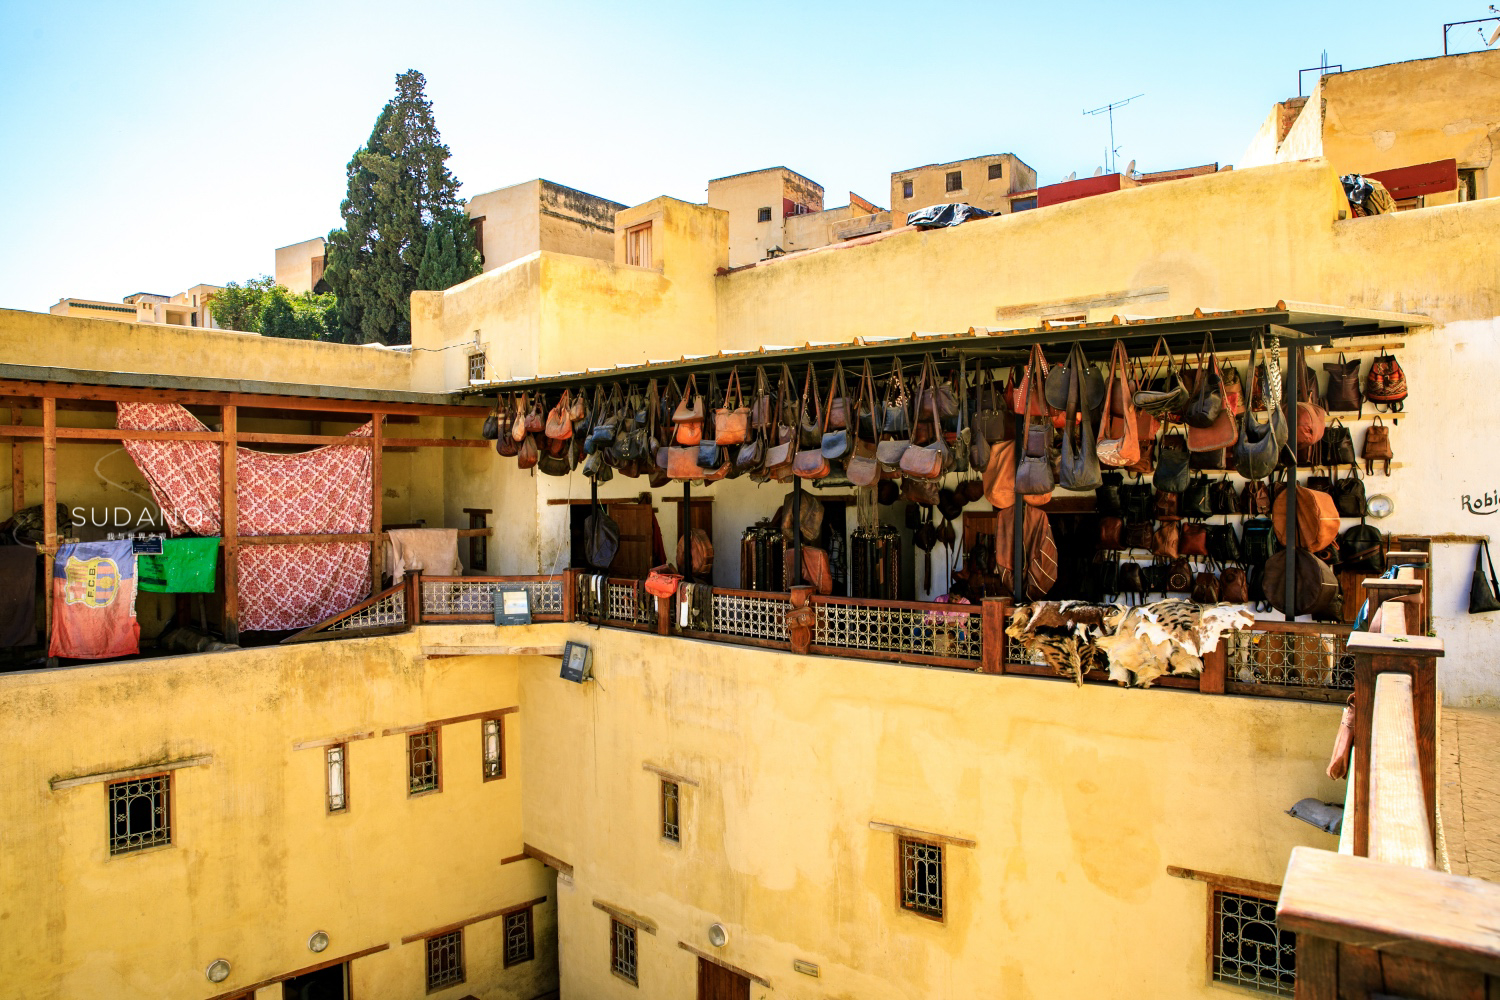 作为摩洛哥最有名的皮革业,非斯的皮革制品值得一买,其价格也不贵